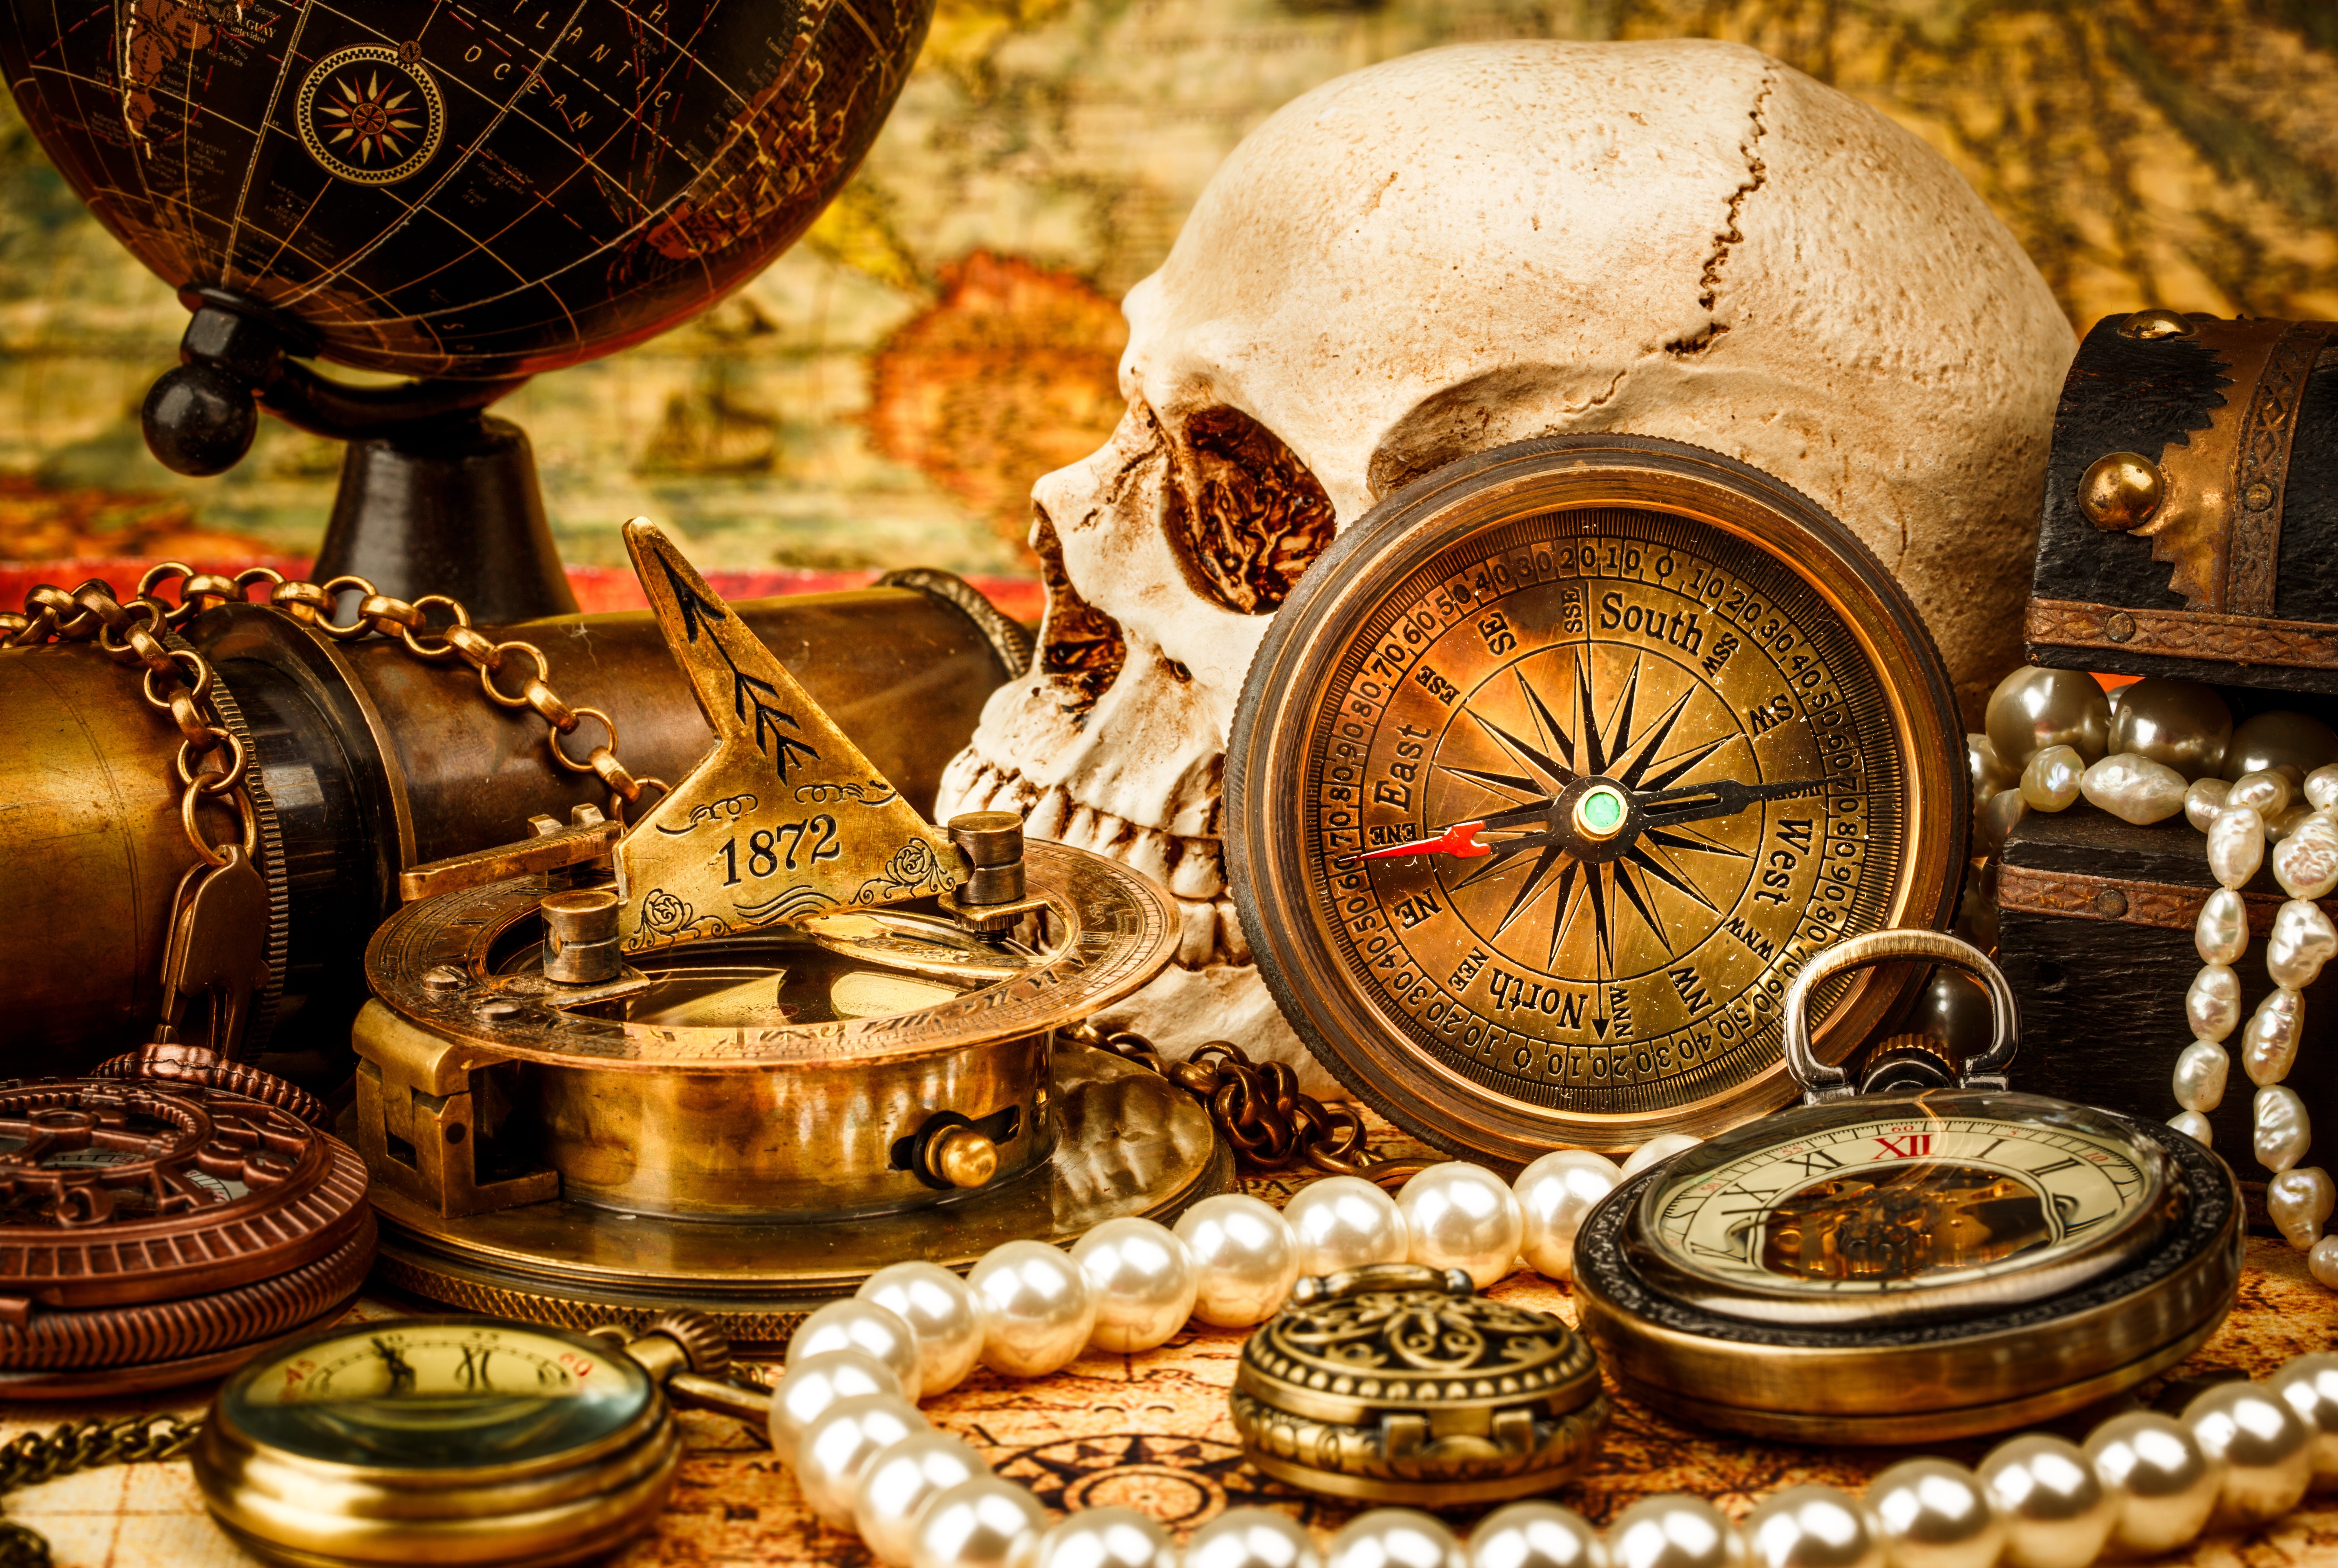 Включи компас на клад. Старинный компас. Пиратские сокровища. Натюрморт с часами. Натюрморт с компасом.